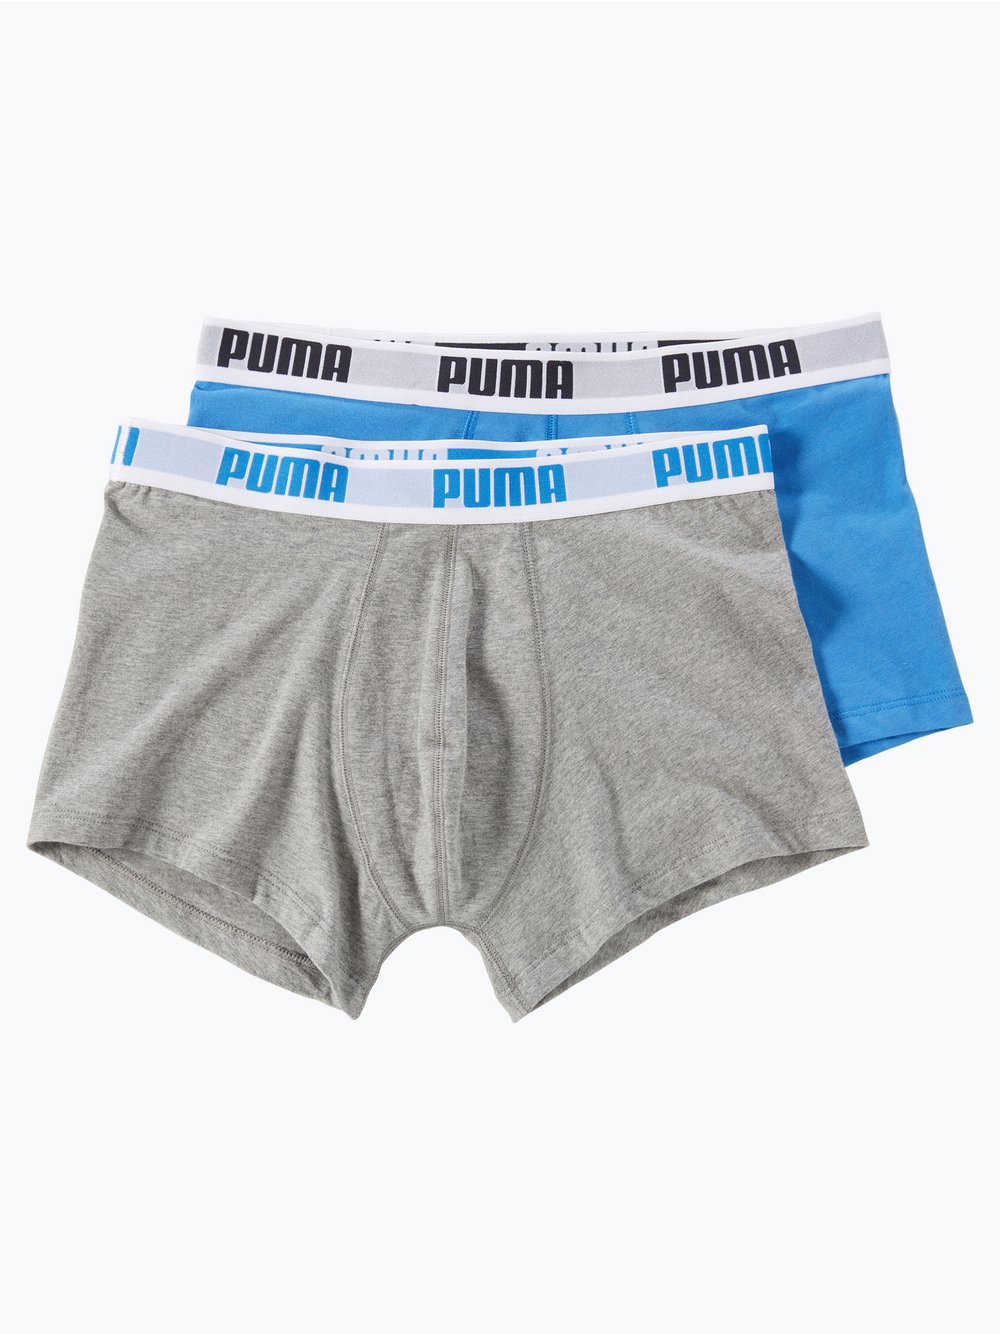 Puma - Obcisłe bokserki męskie pakowane po 2 szt., szary|niebieski